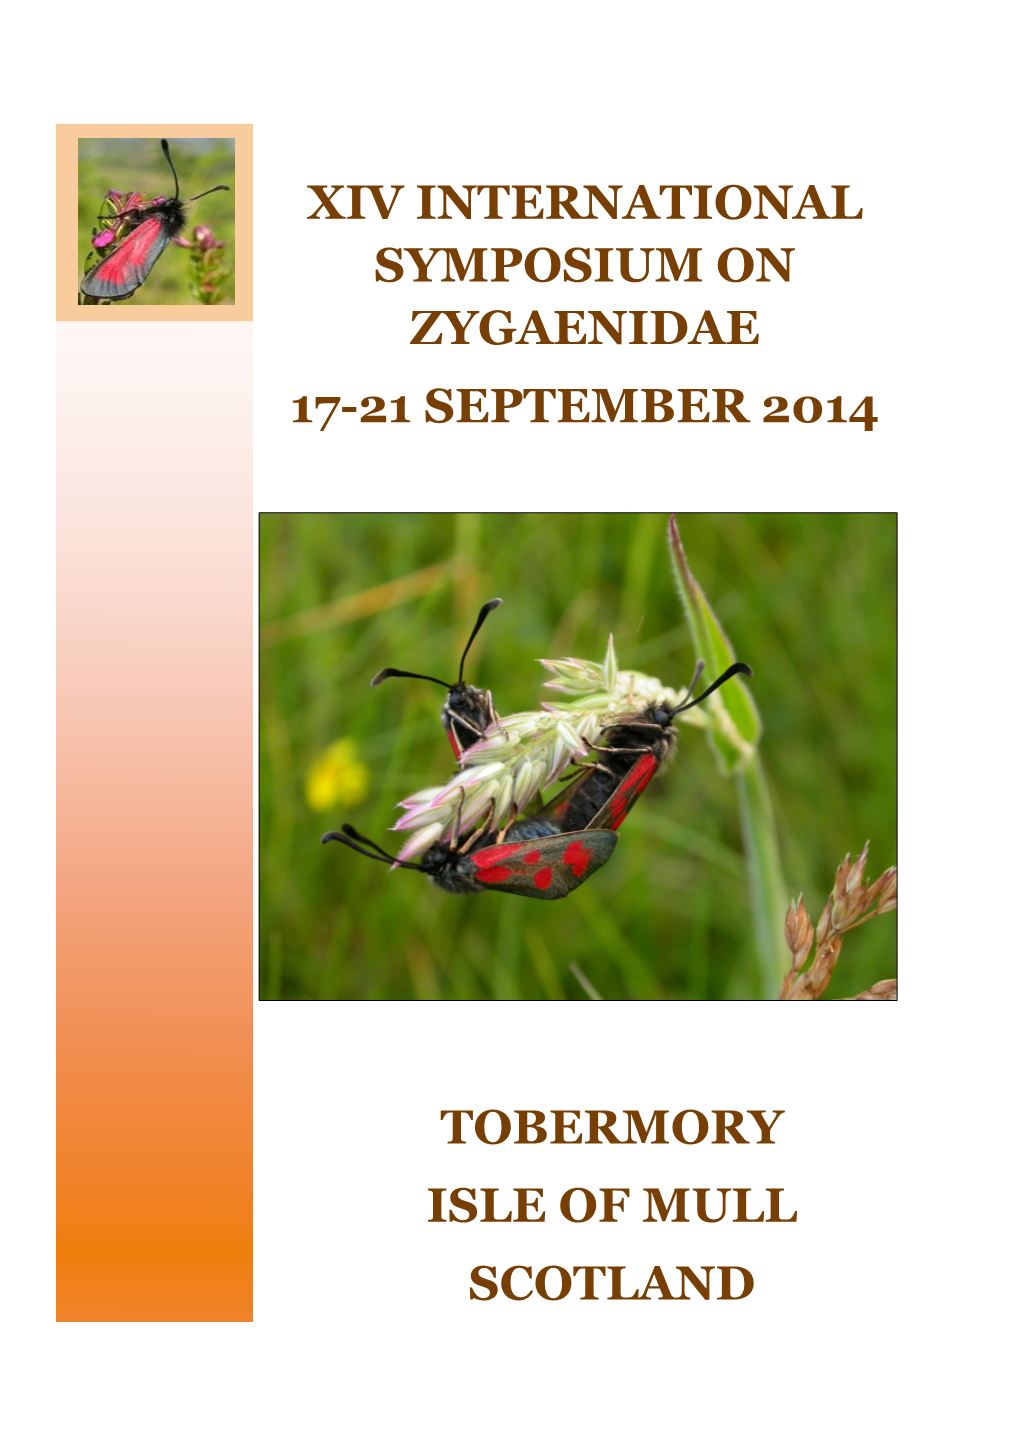 Xiv International Symposium on Zygaenidae 17-21 September 2014